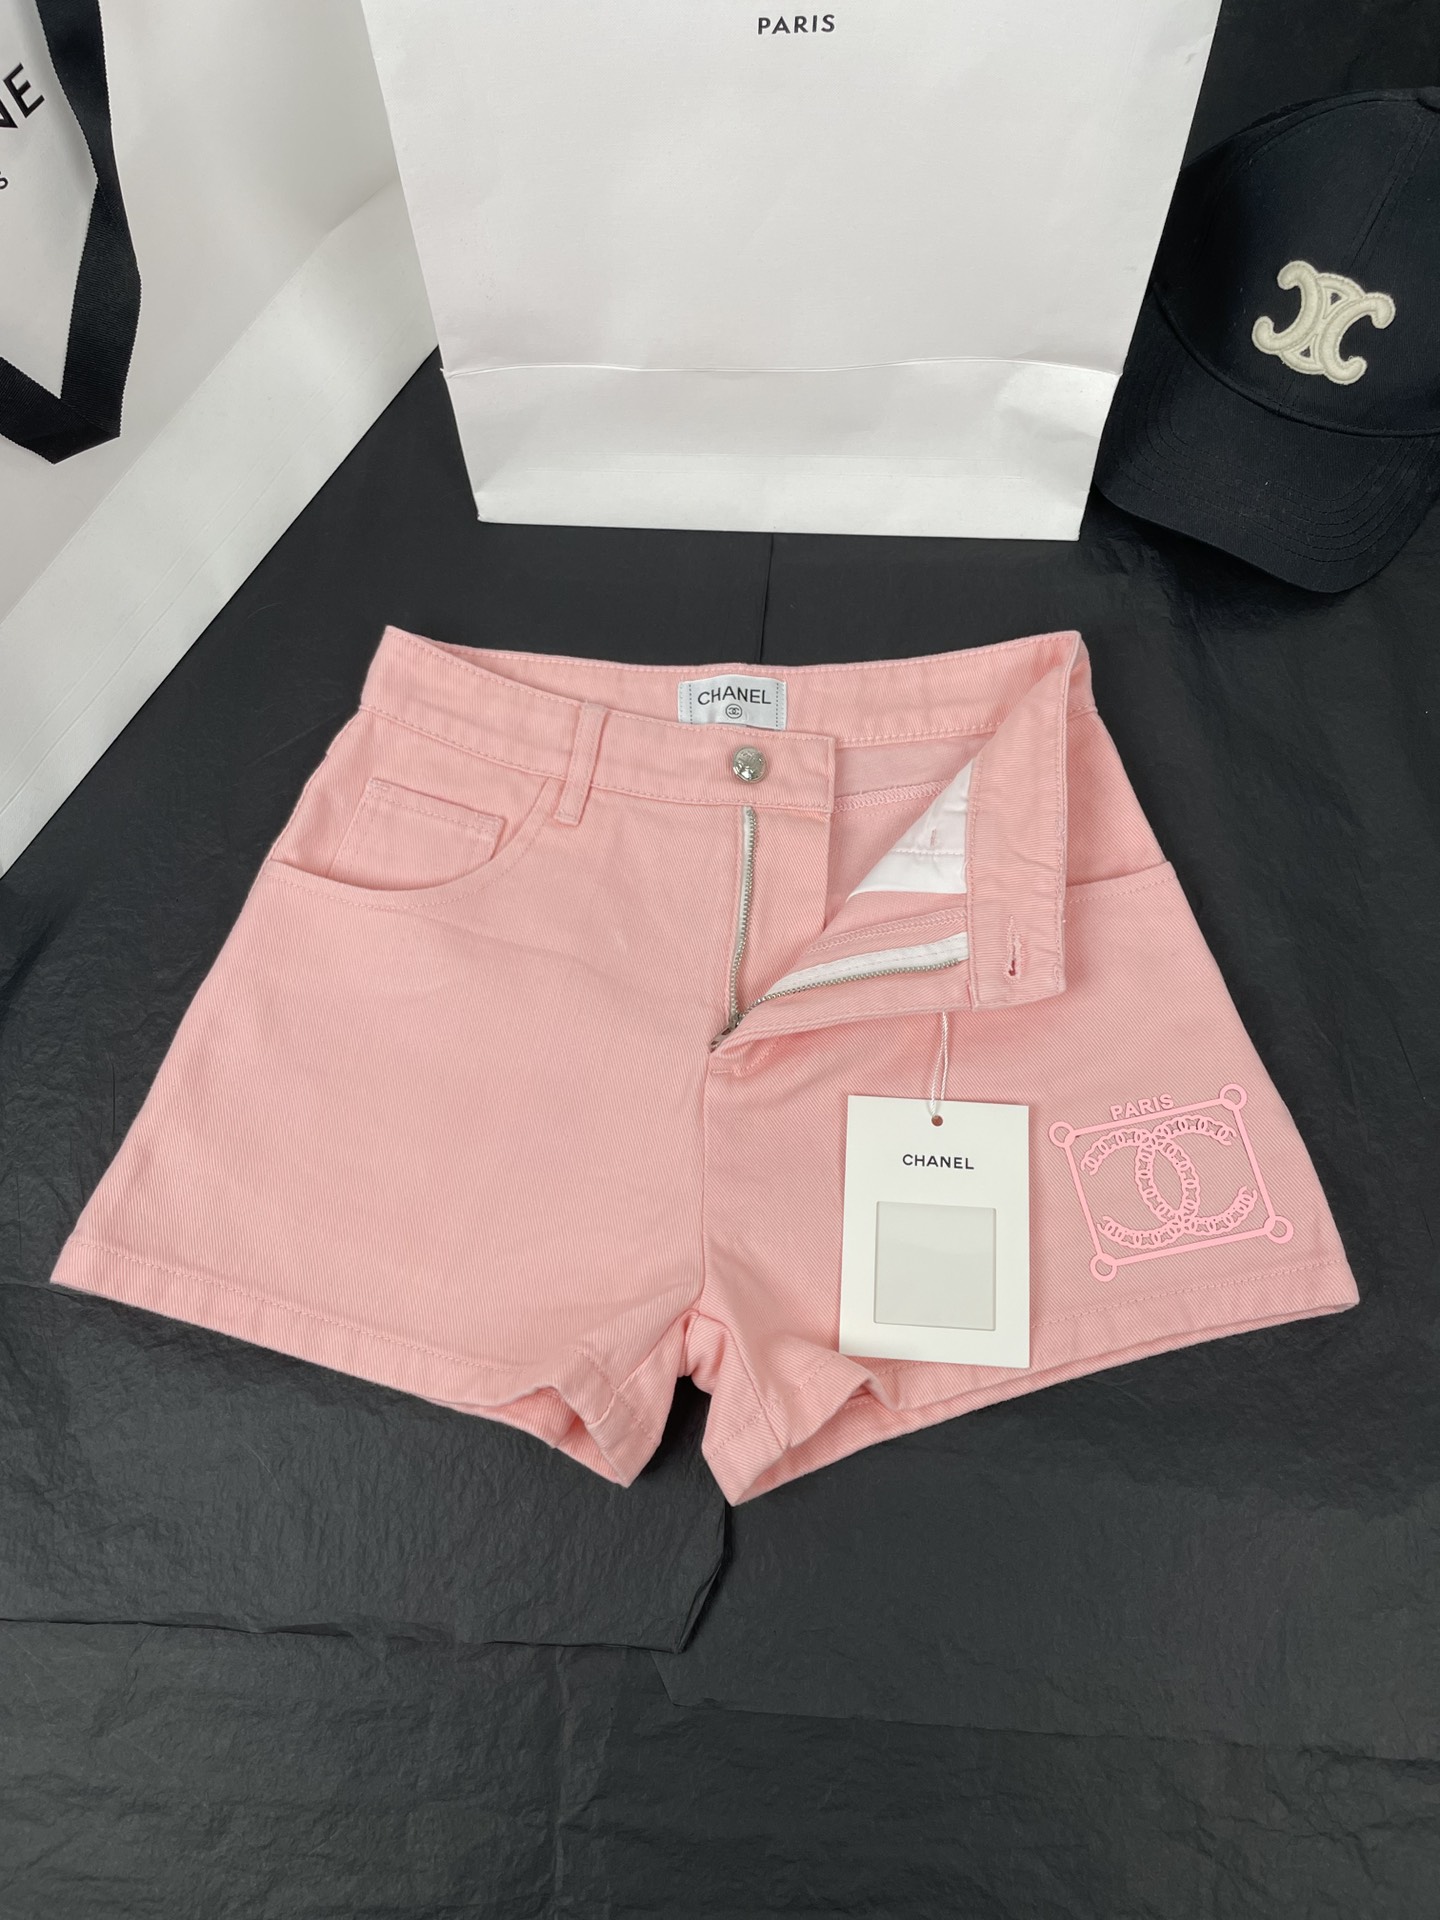 シャネルズボンコピー ショートパンツ 夏服 美しい ファッション 柔らかい 三つ色 ピンク_4